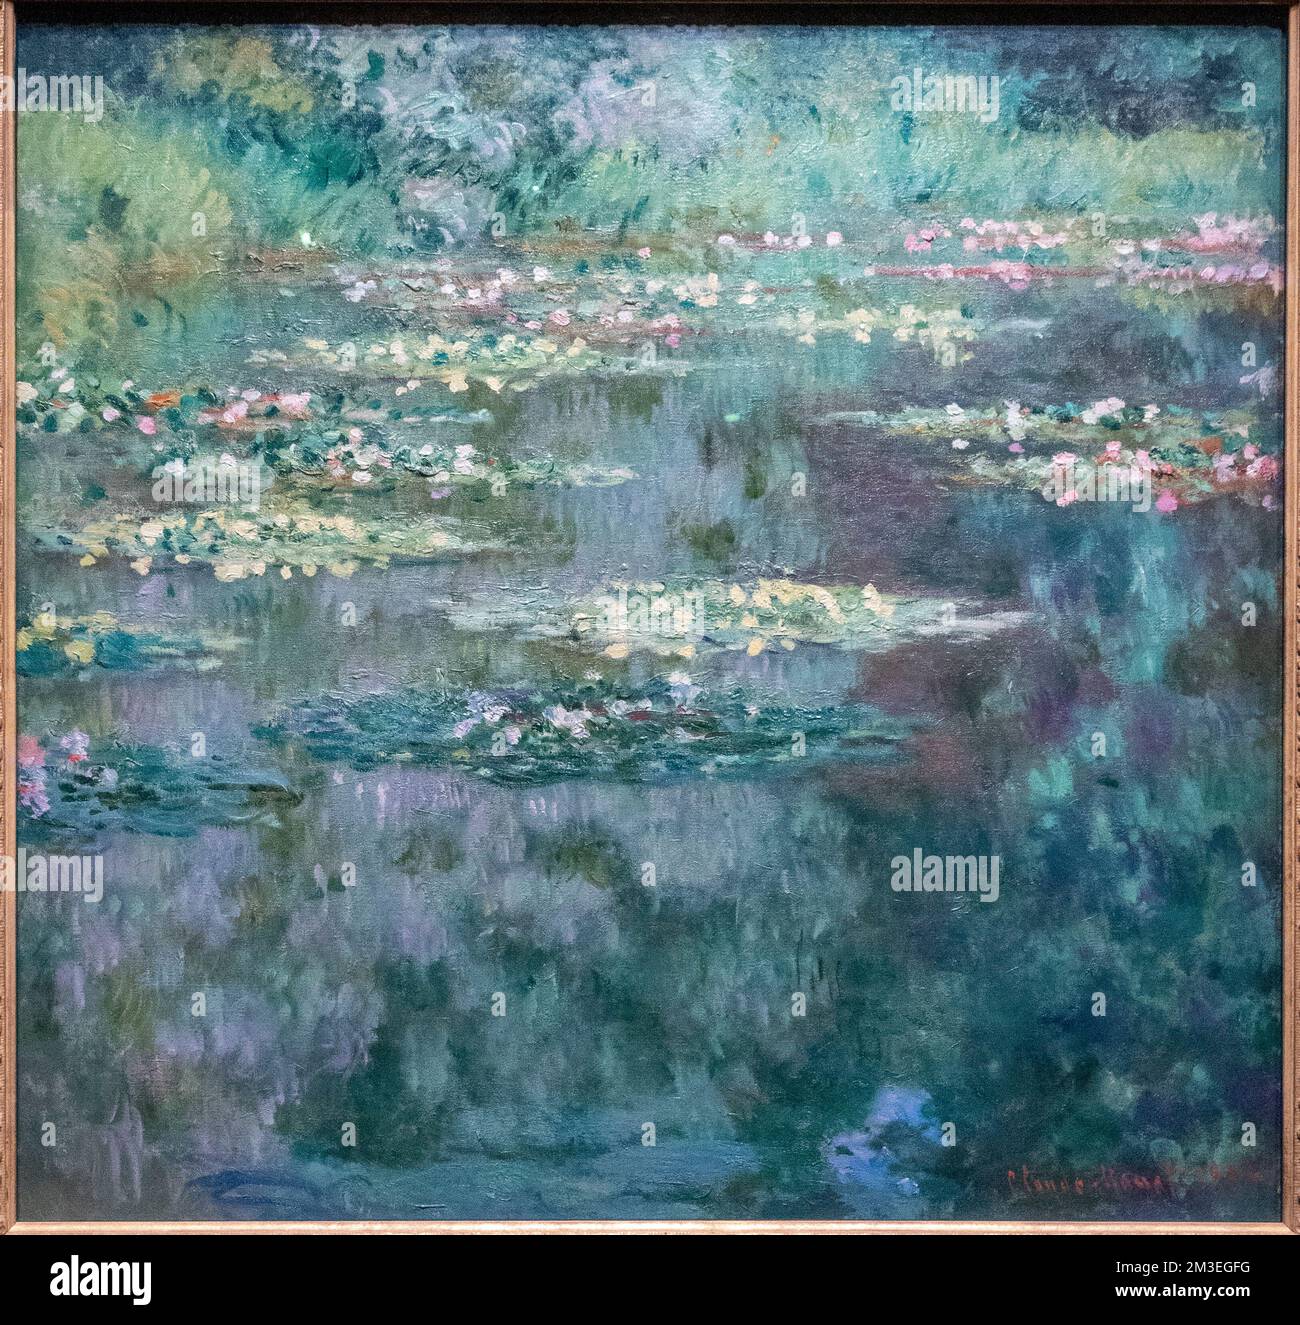 Claude Monet, les nénuphars ou l'Étang des nénuphars (Nymphéas), 1904. Huile sur toile. Musée d'art de Denver, Colorado, États-Unis Banque D'Images